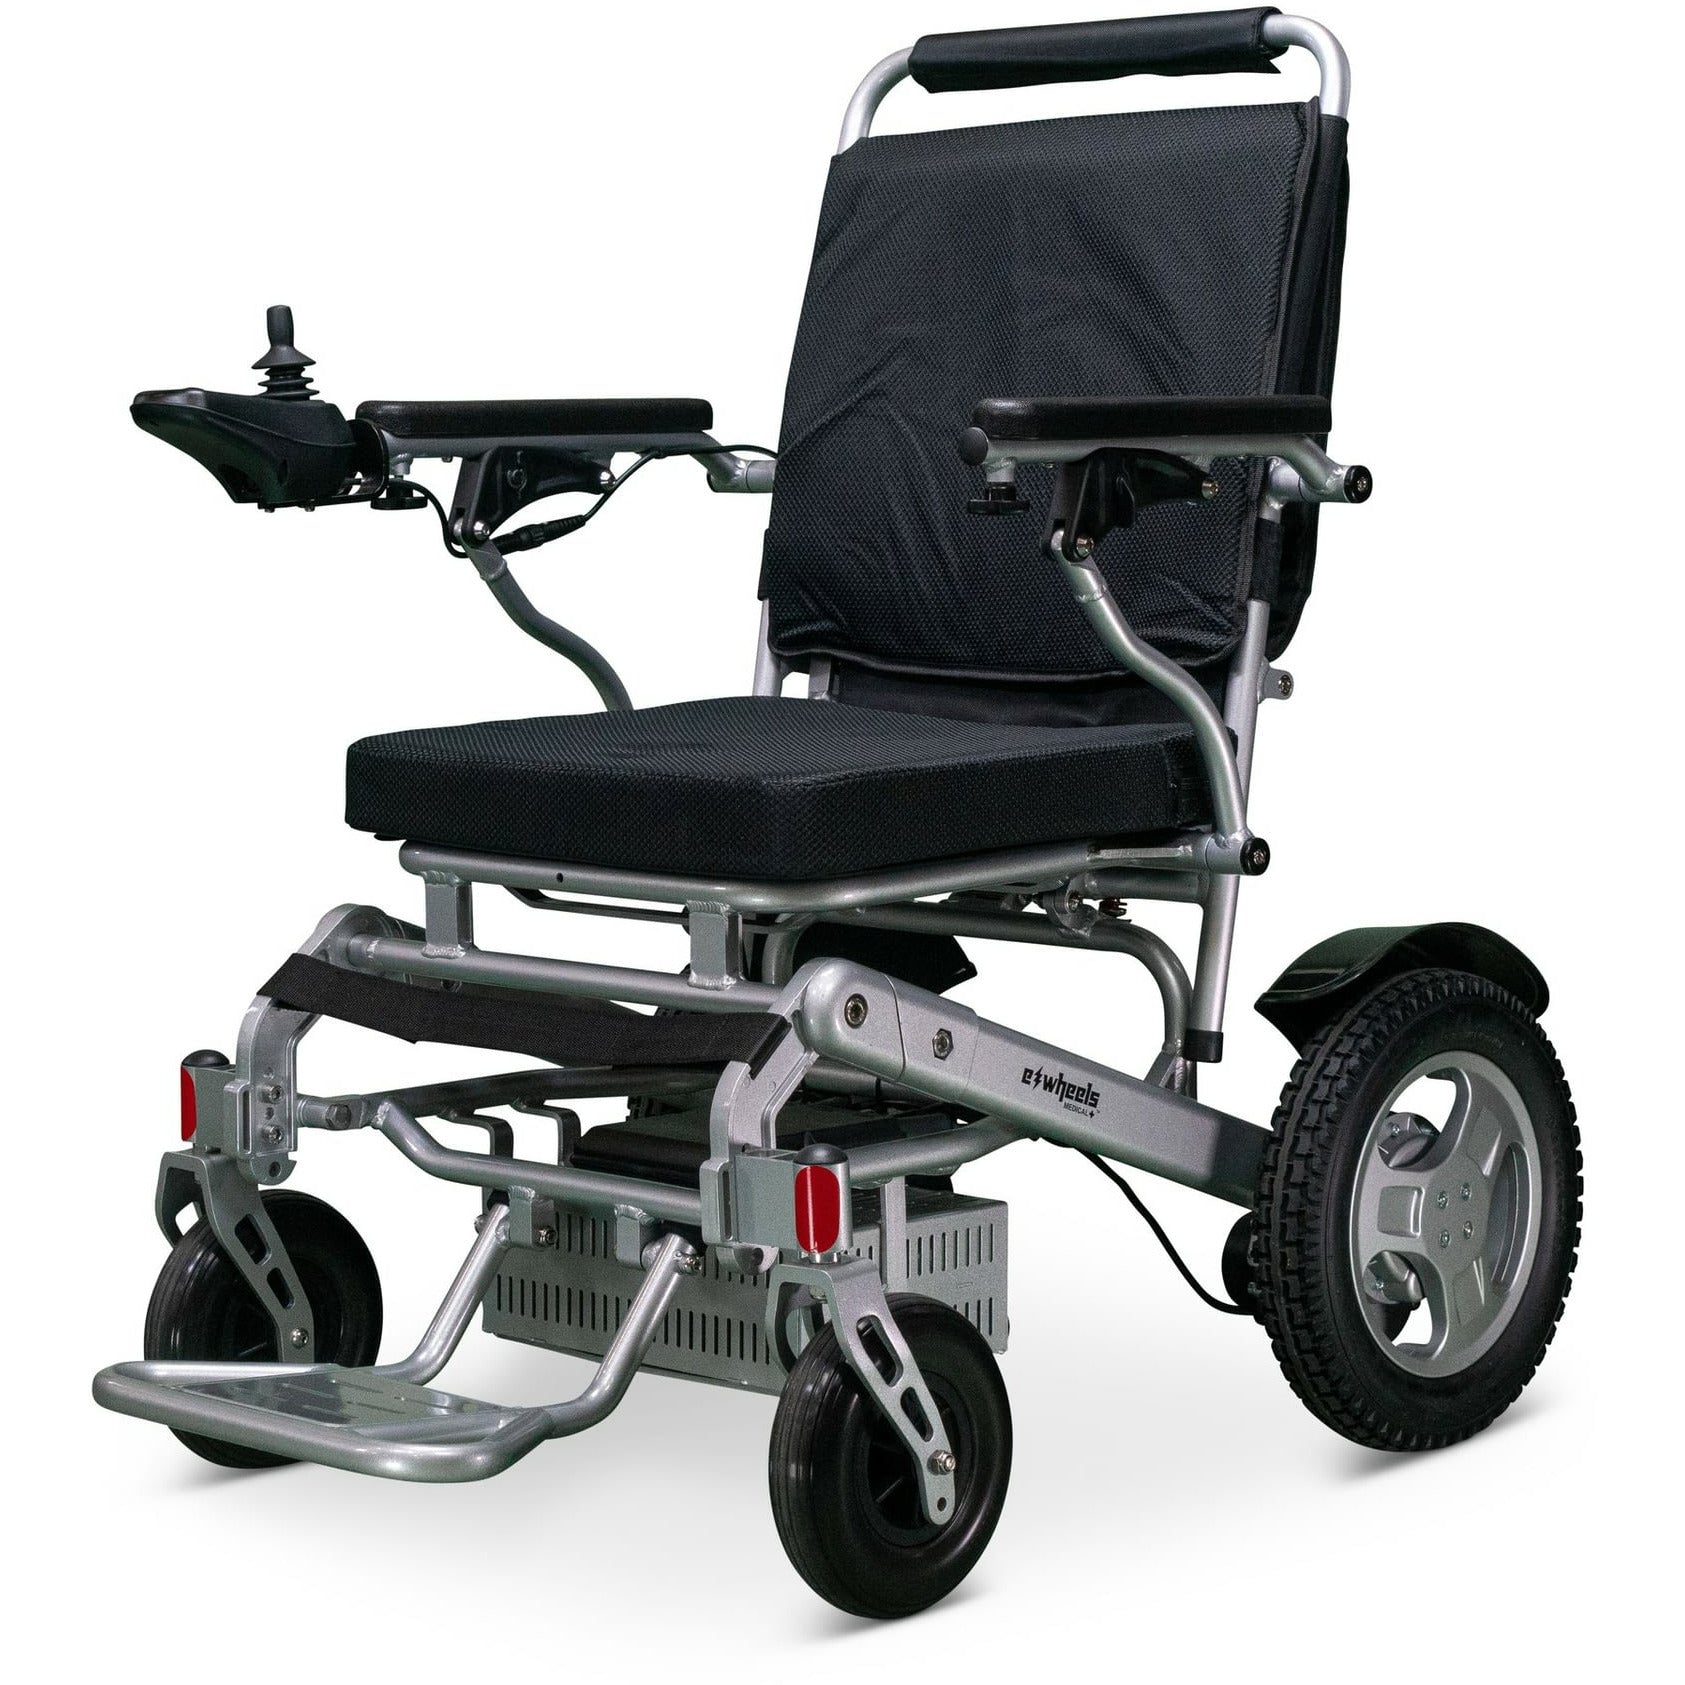 EWheels EW-M45 12V/6Ah 180W Folding Electric Wheelchair